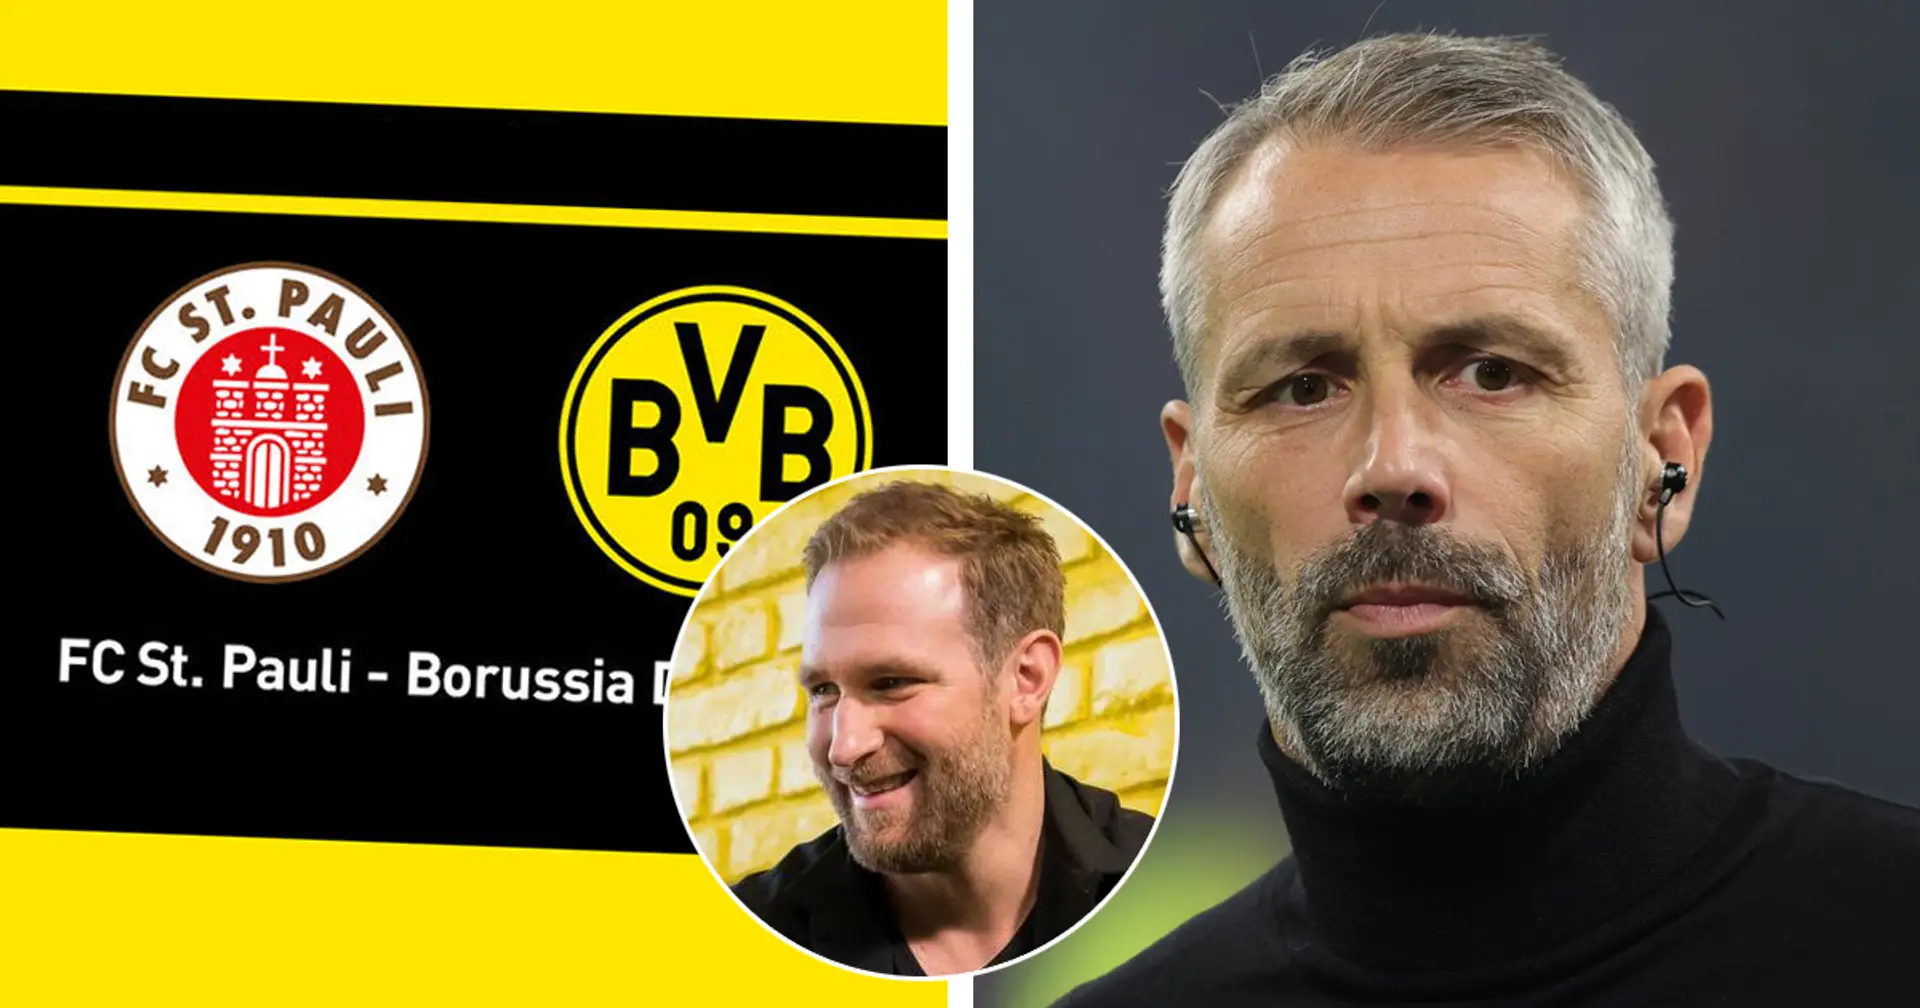 "Überraschungen gibt es immer wieder": Ex-BVB-Profi sagt ein schwieriges Pokal-Duell vs. St. Pauli vorher